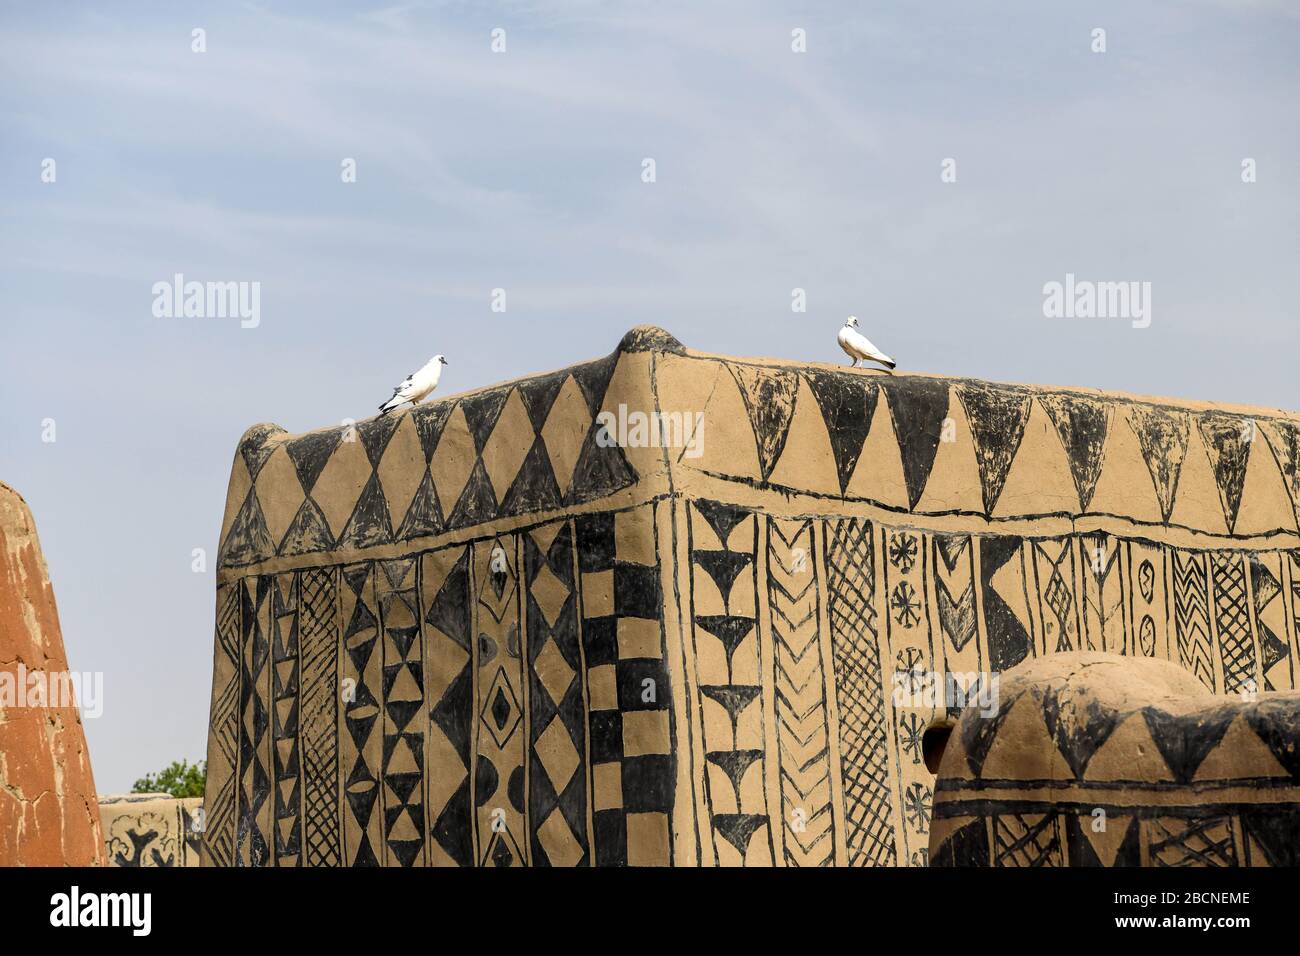 Afrika, Burkina Faso, Region Pô, Tiebele. Stadtansicht des königlichen Hofdorfes in Tiebele. Zwei Vögel sind auf dem Dach des Gebäudes Stockfoto